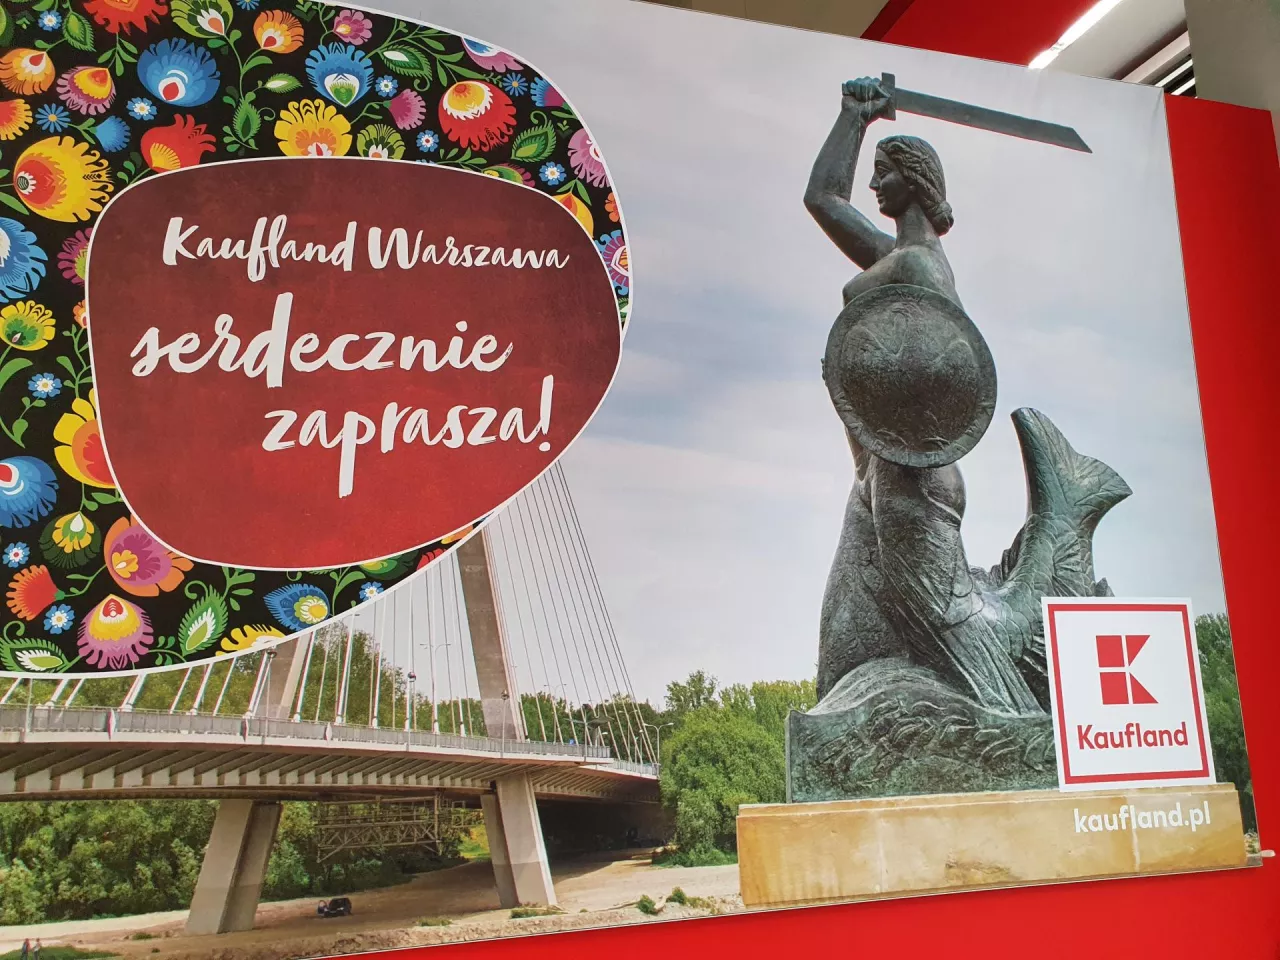 Hipermarket Kaufland w Warszawie (fot. wiadomoscihandlowe.pl)